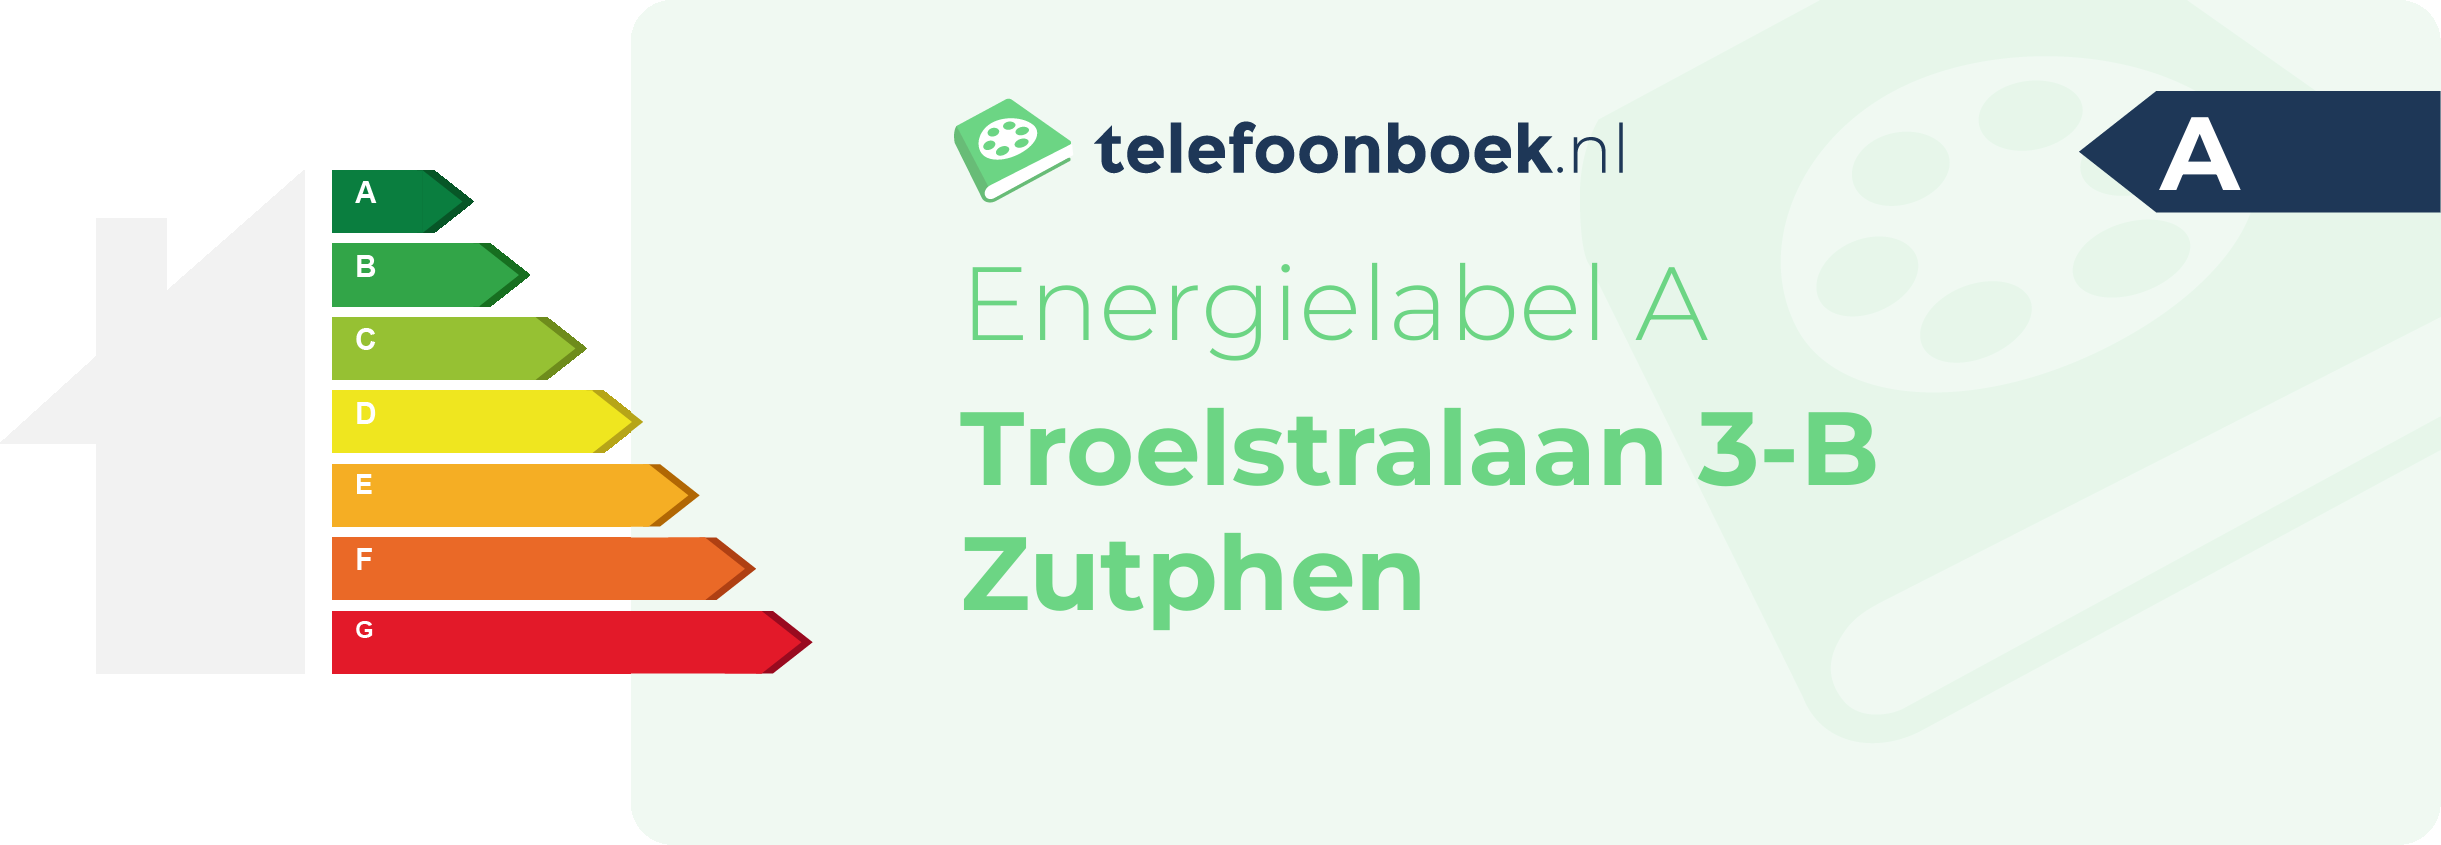 Energielabel Troelstralaan 3-B Zutphen